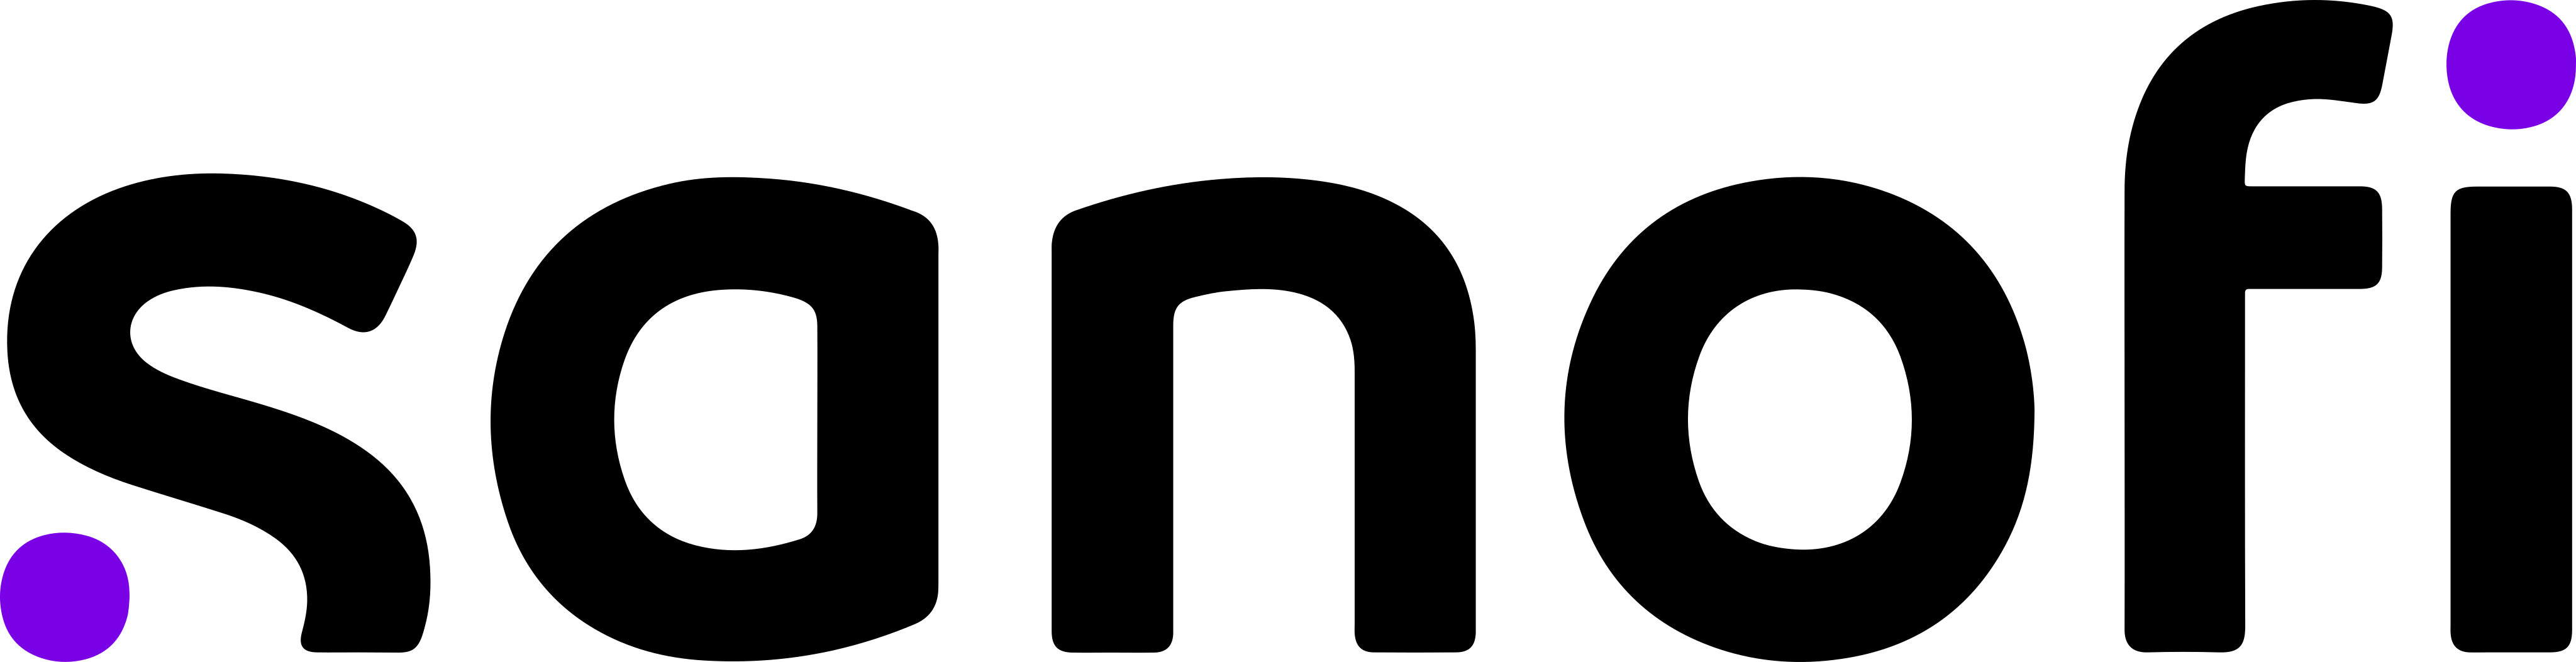 sanofi logo 16 - Sanofi Logo